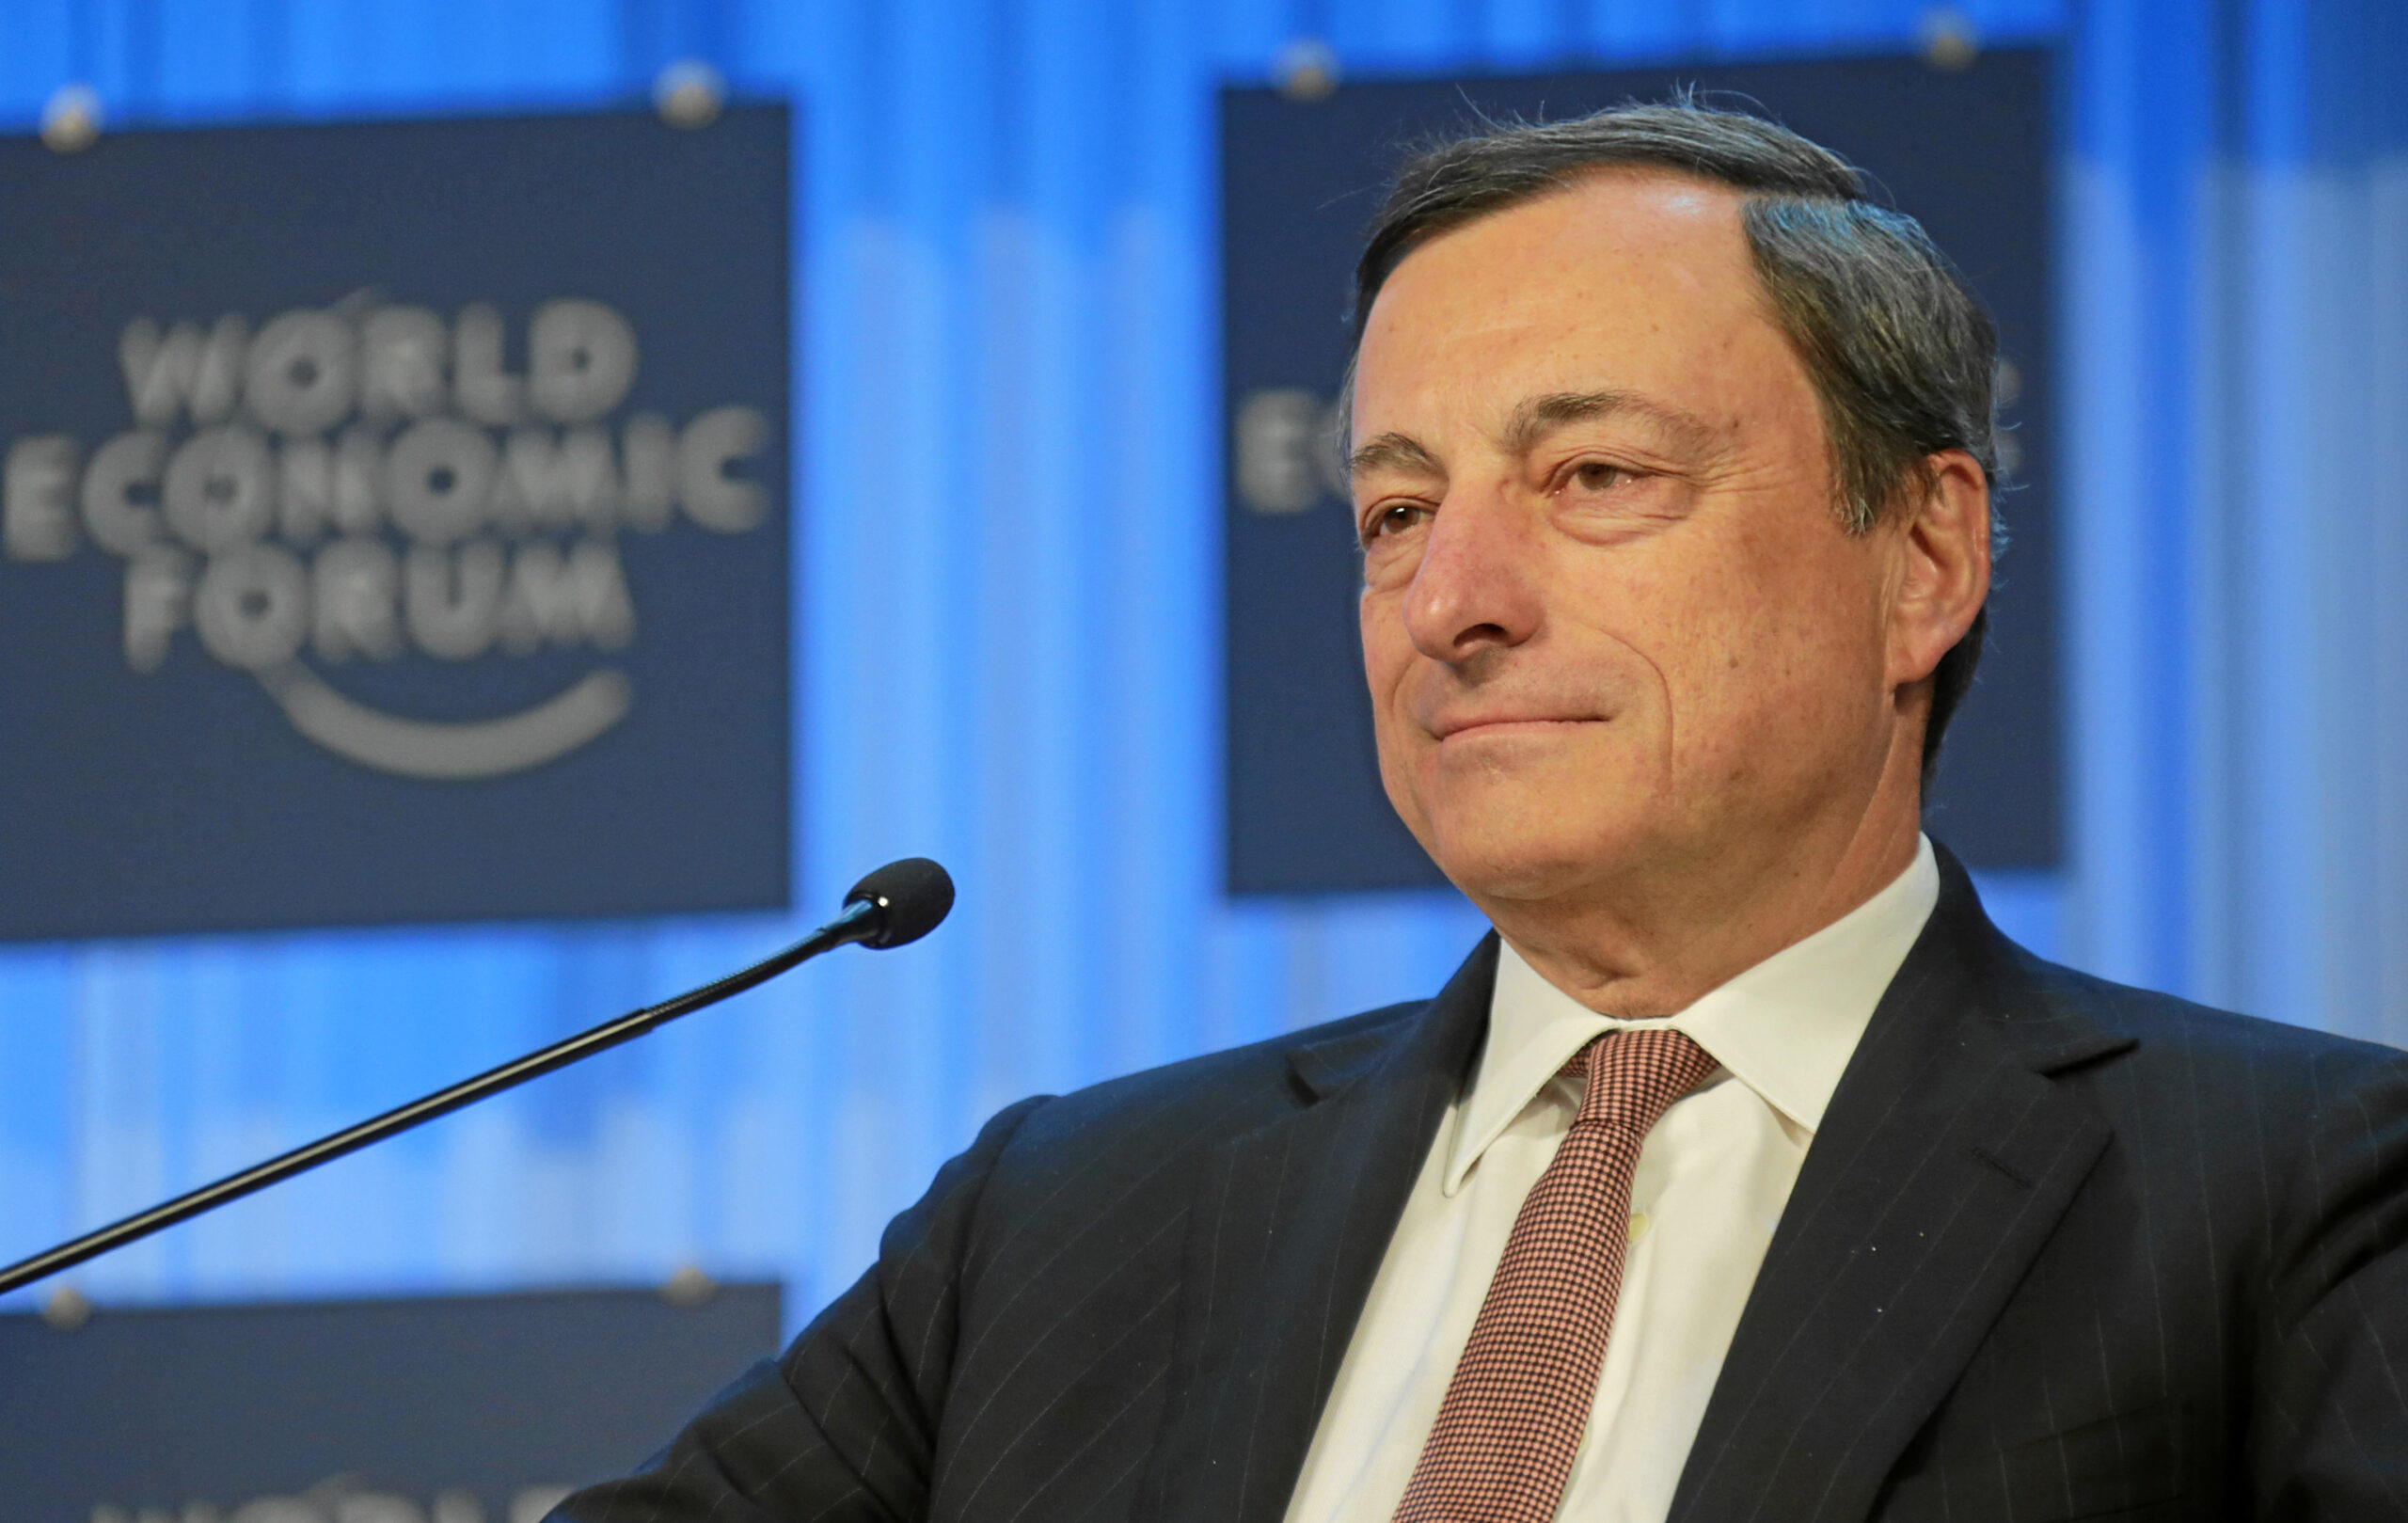 Canzio e Tomasetti firmatari della petizione pro Draghi. Informazione di San Marino: “Opinabile contegno istituzionale”